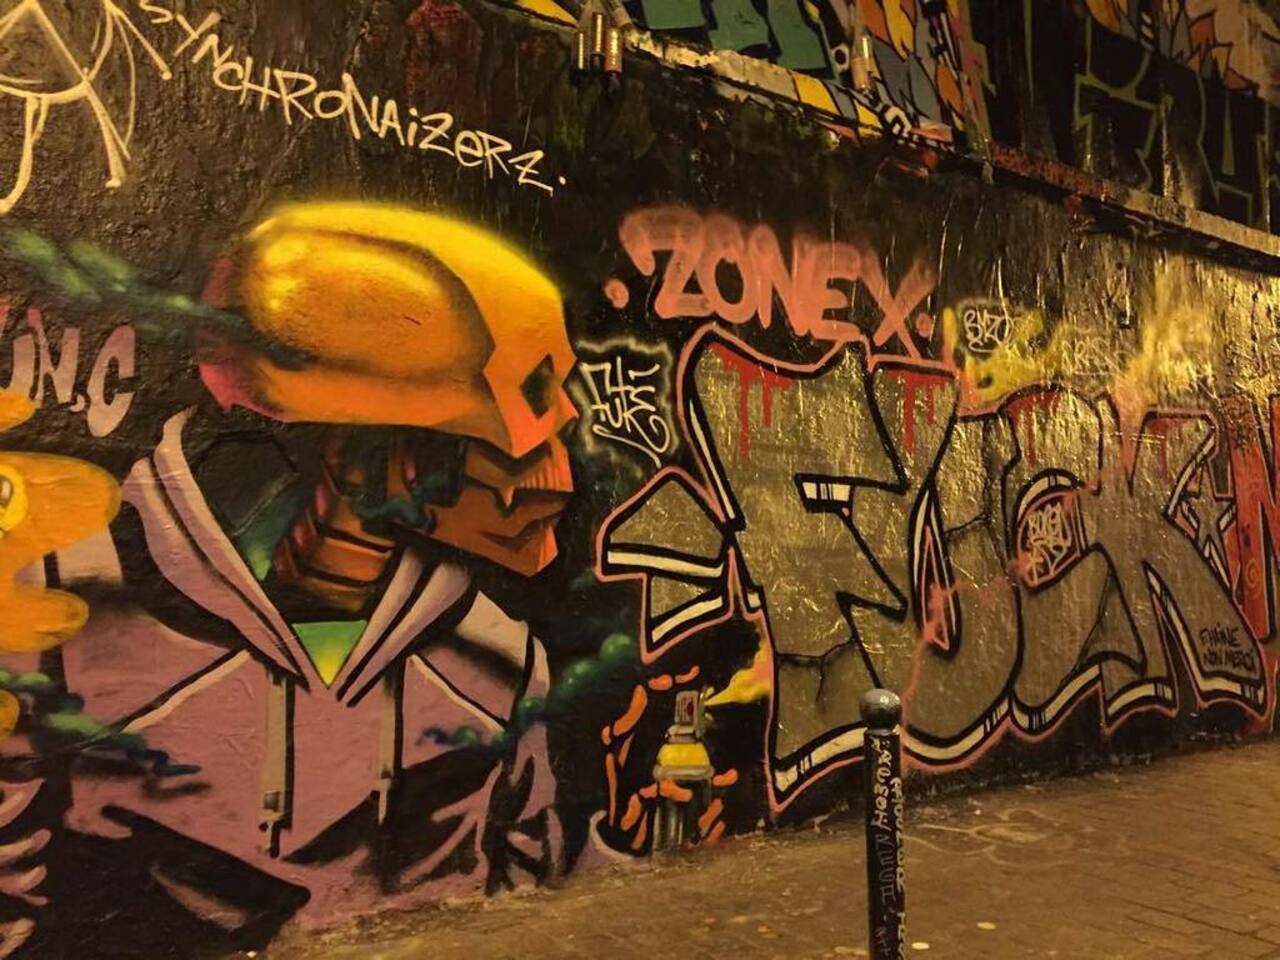 Du côté de Paris #streetartparis #parisstreetart #wallart #art #streetart #graffiti by wouye http://t.co/al7NvCypi7